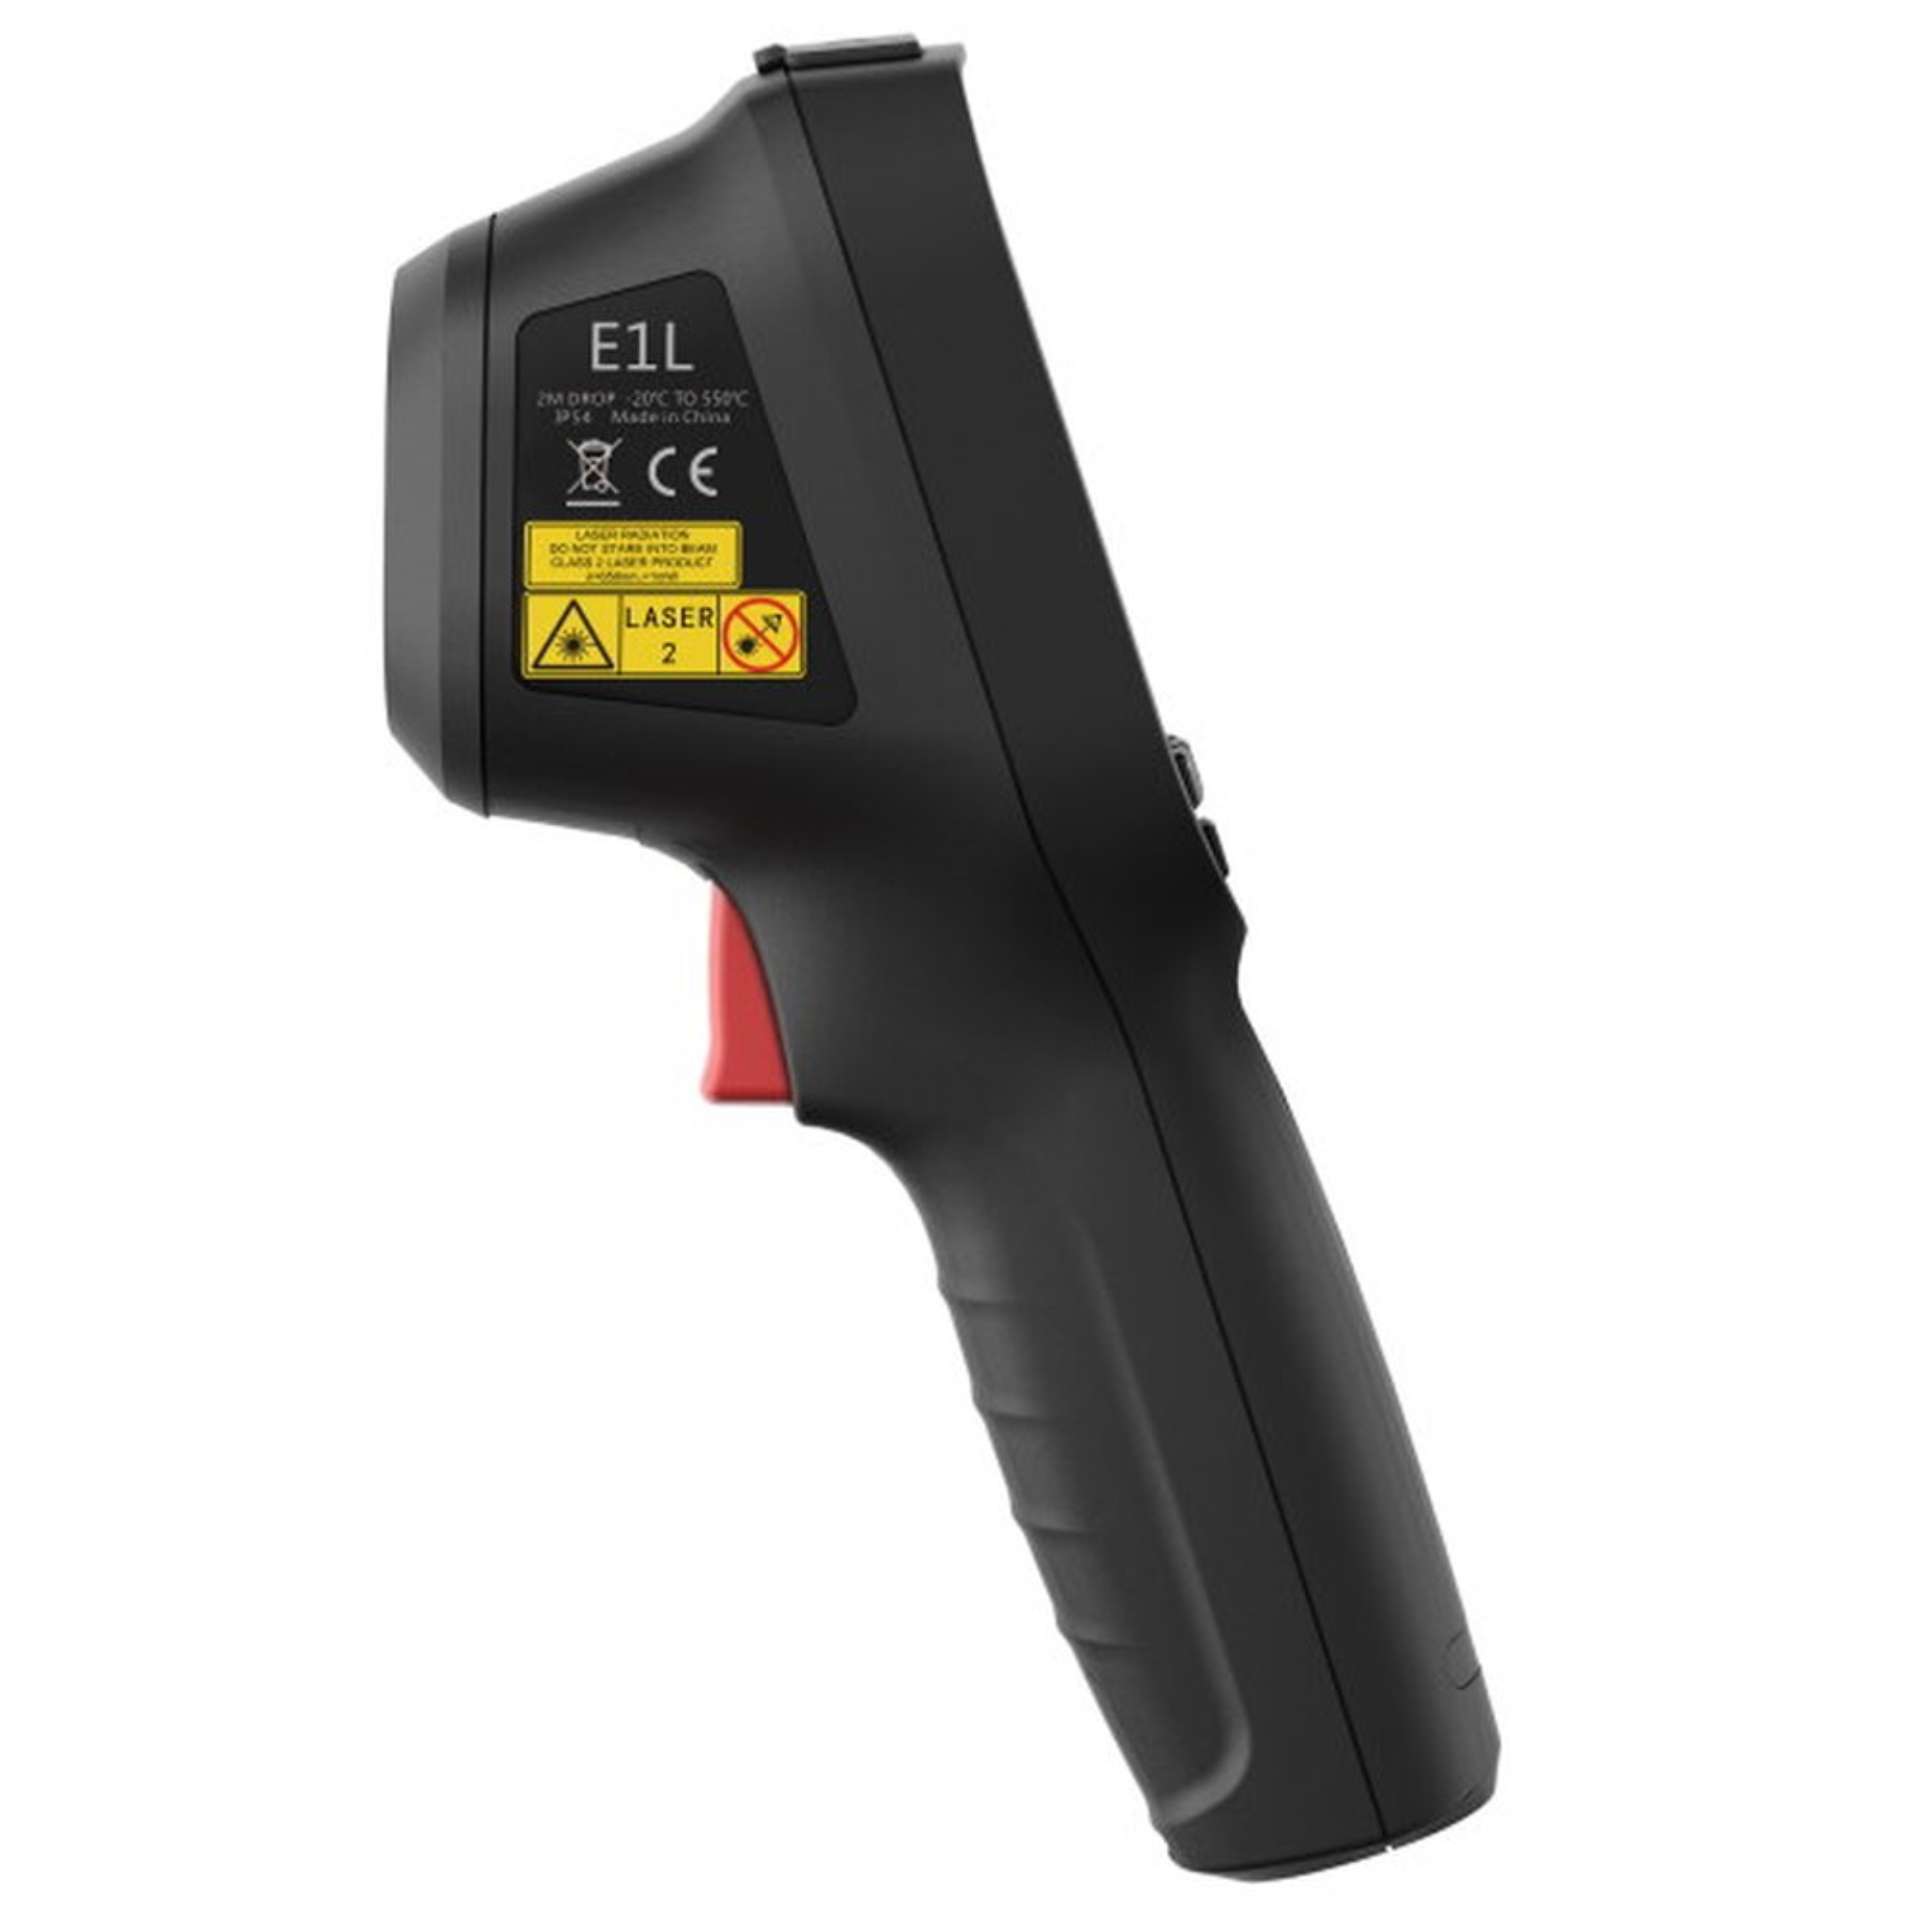 E1L Thermografiekamera 160x120px -20° bis 550°C